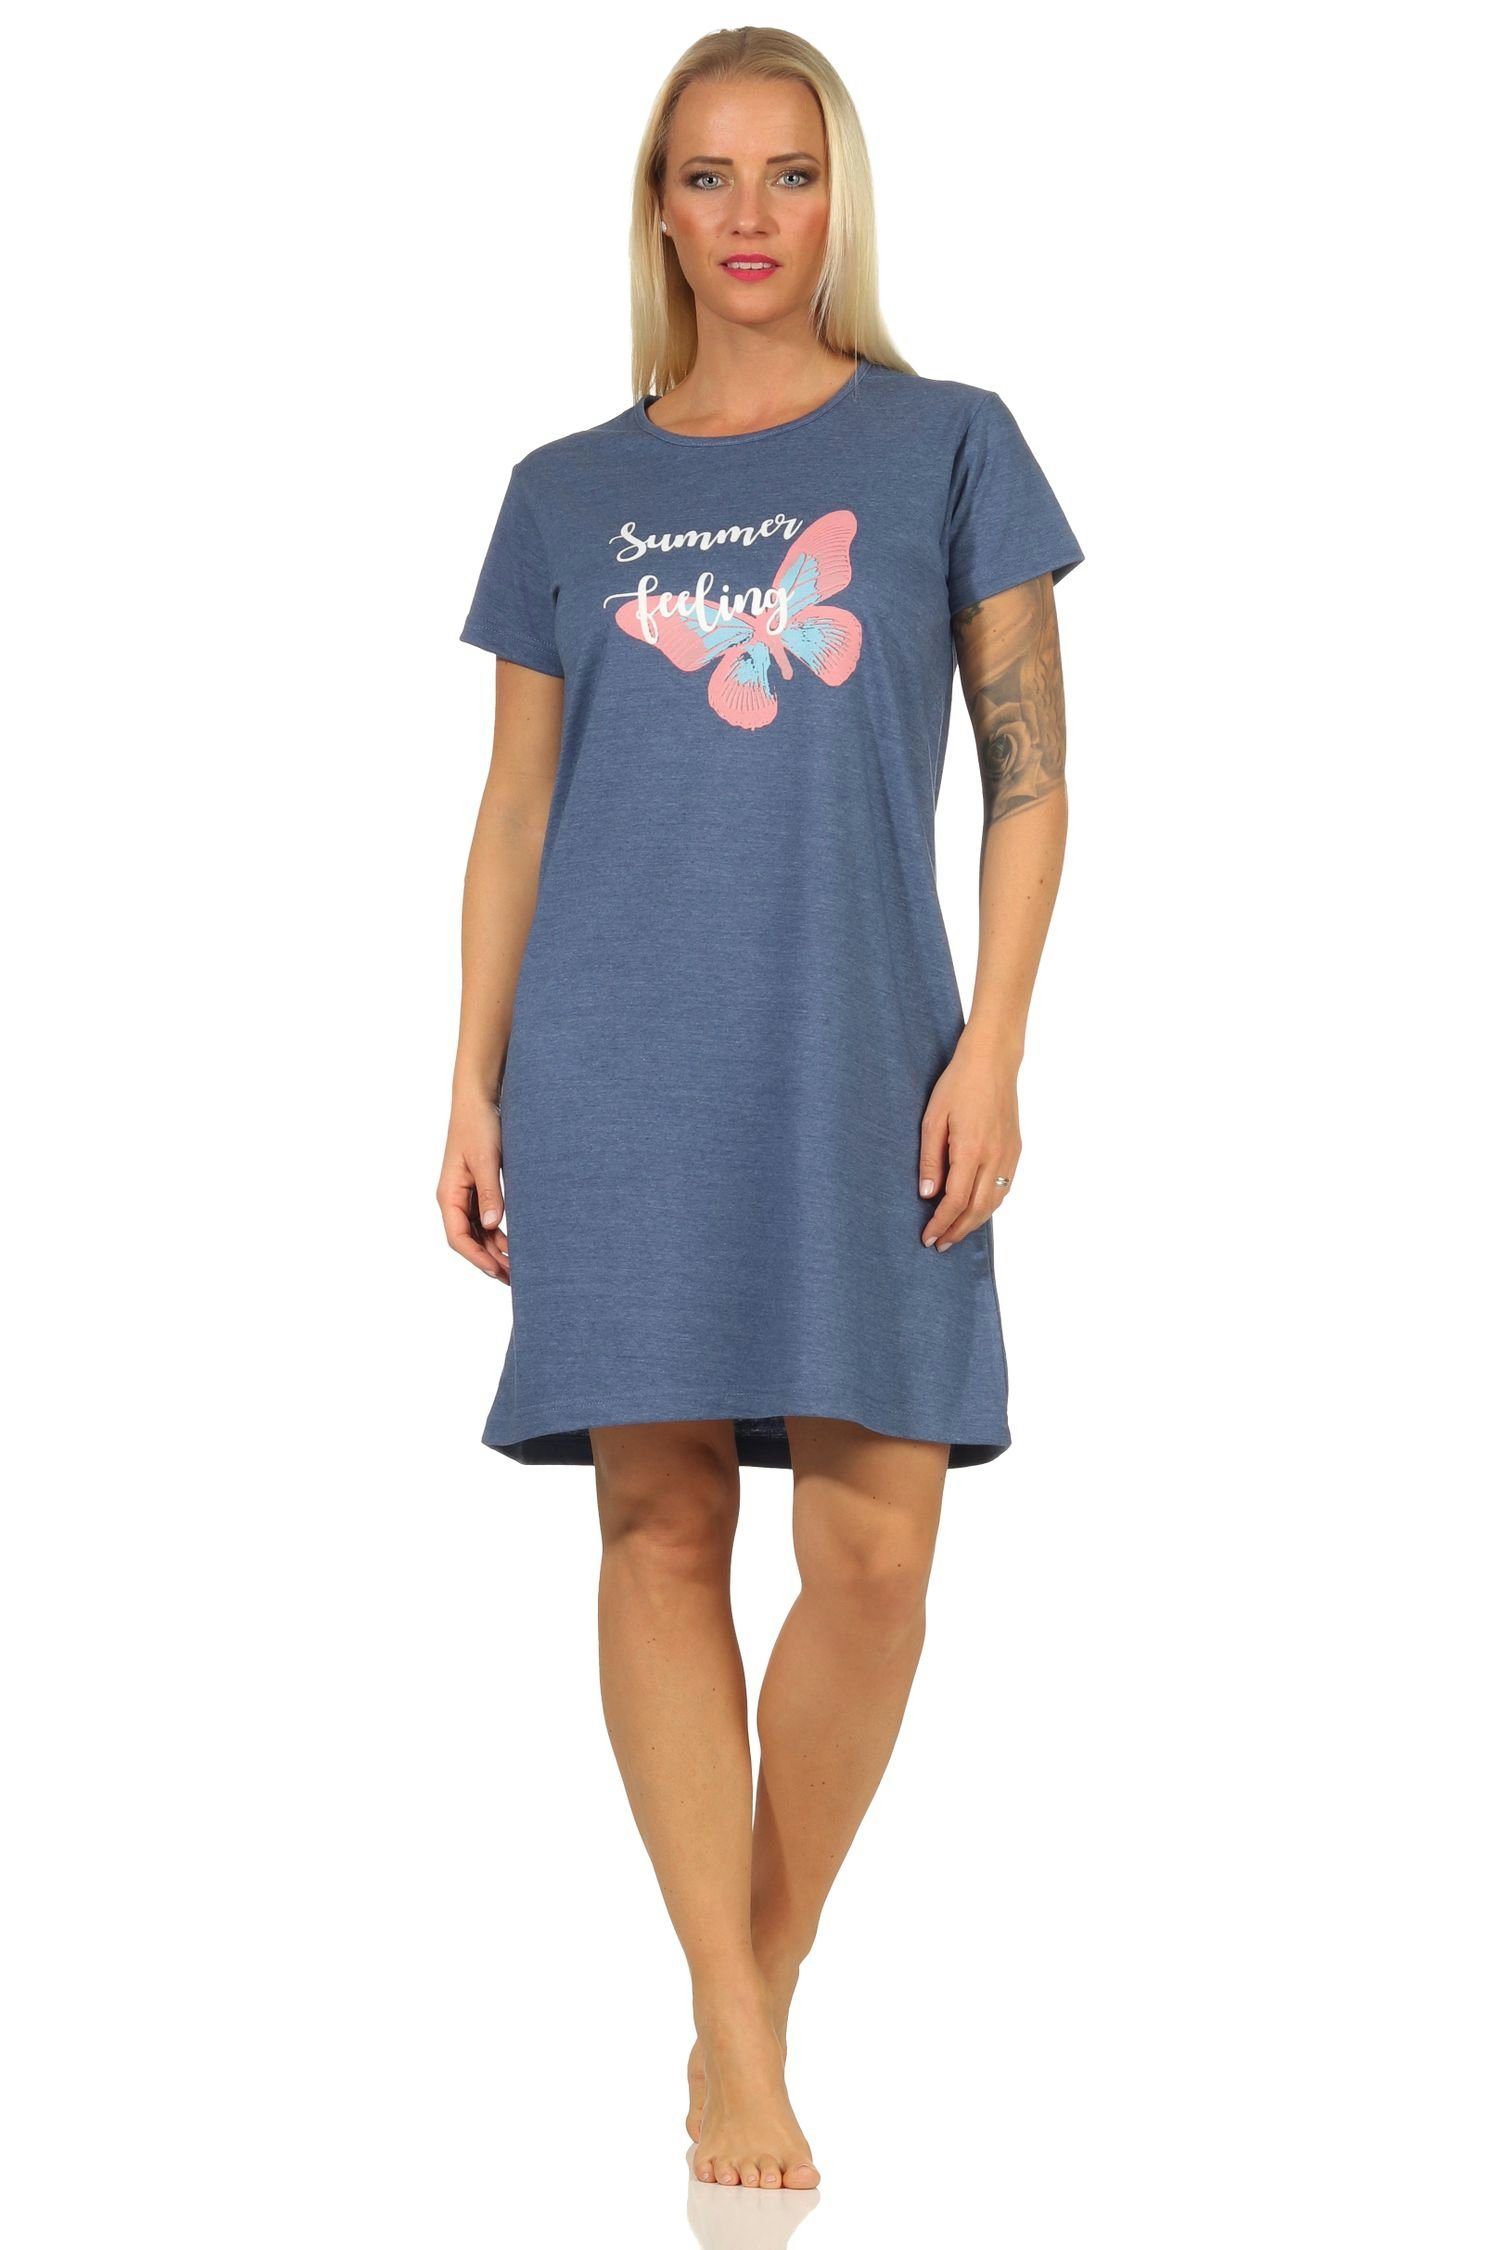 RELAX by Normann Nachthemd Sommerliches Damen kurzarm Nachthemd mit Schmetterlingsmotiv - 67144 blau